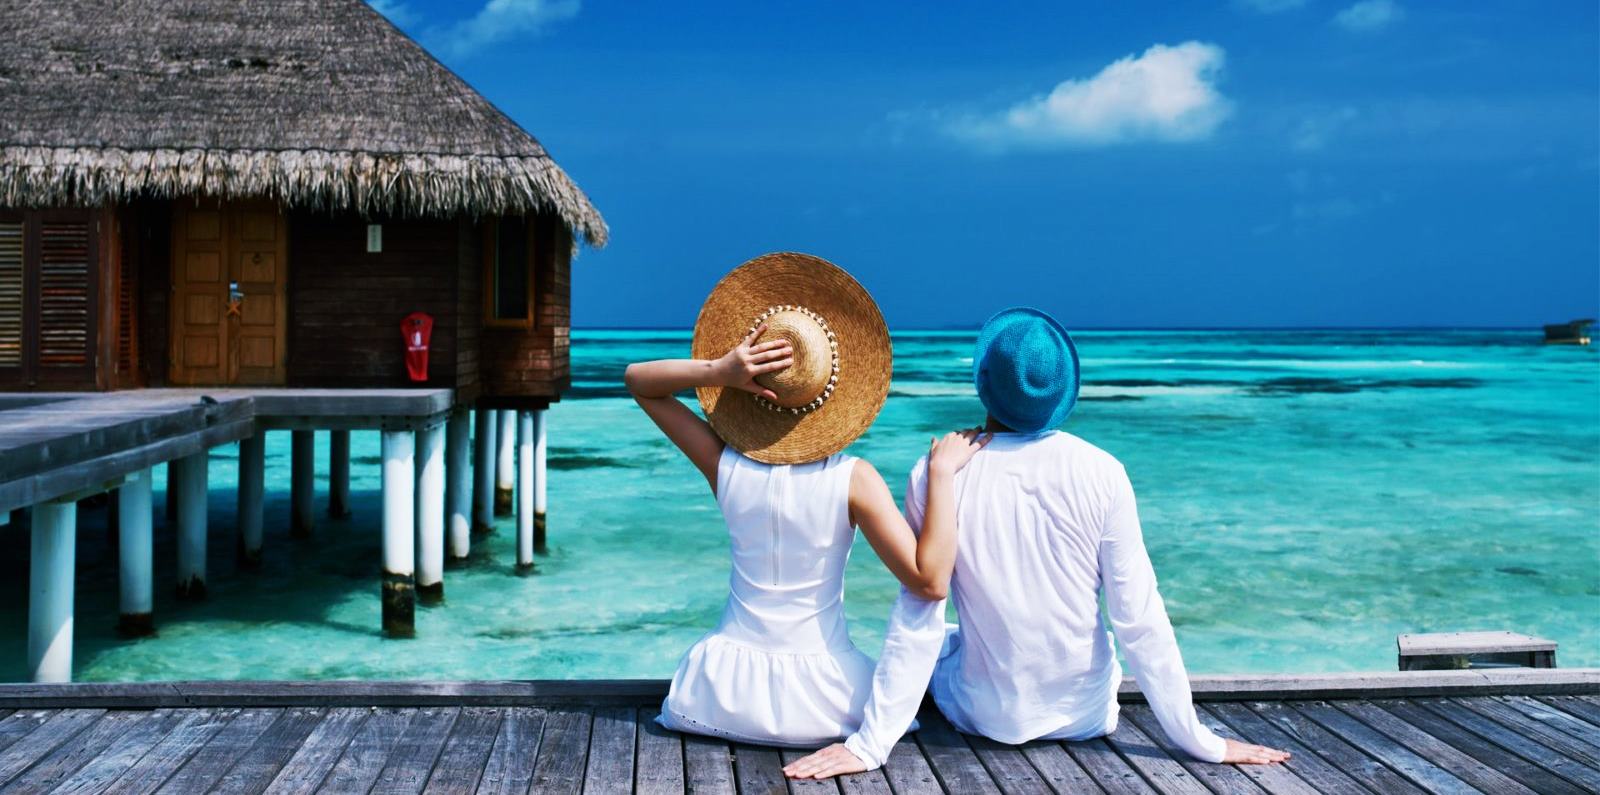 Dünyanın her yerinden Maldivlere gelen balayı çiftleri Maldivler Turları esnasında unutamayacakları anlar yaşıyor.